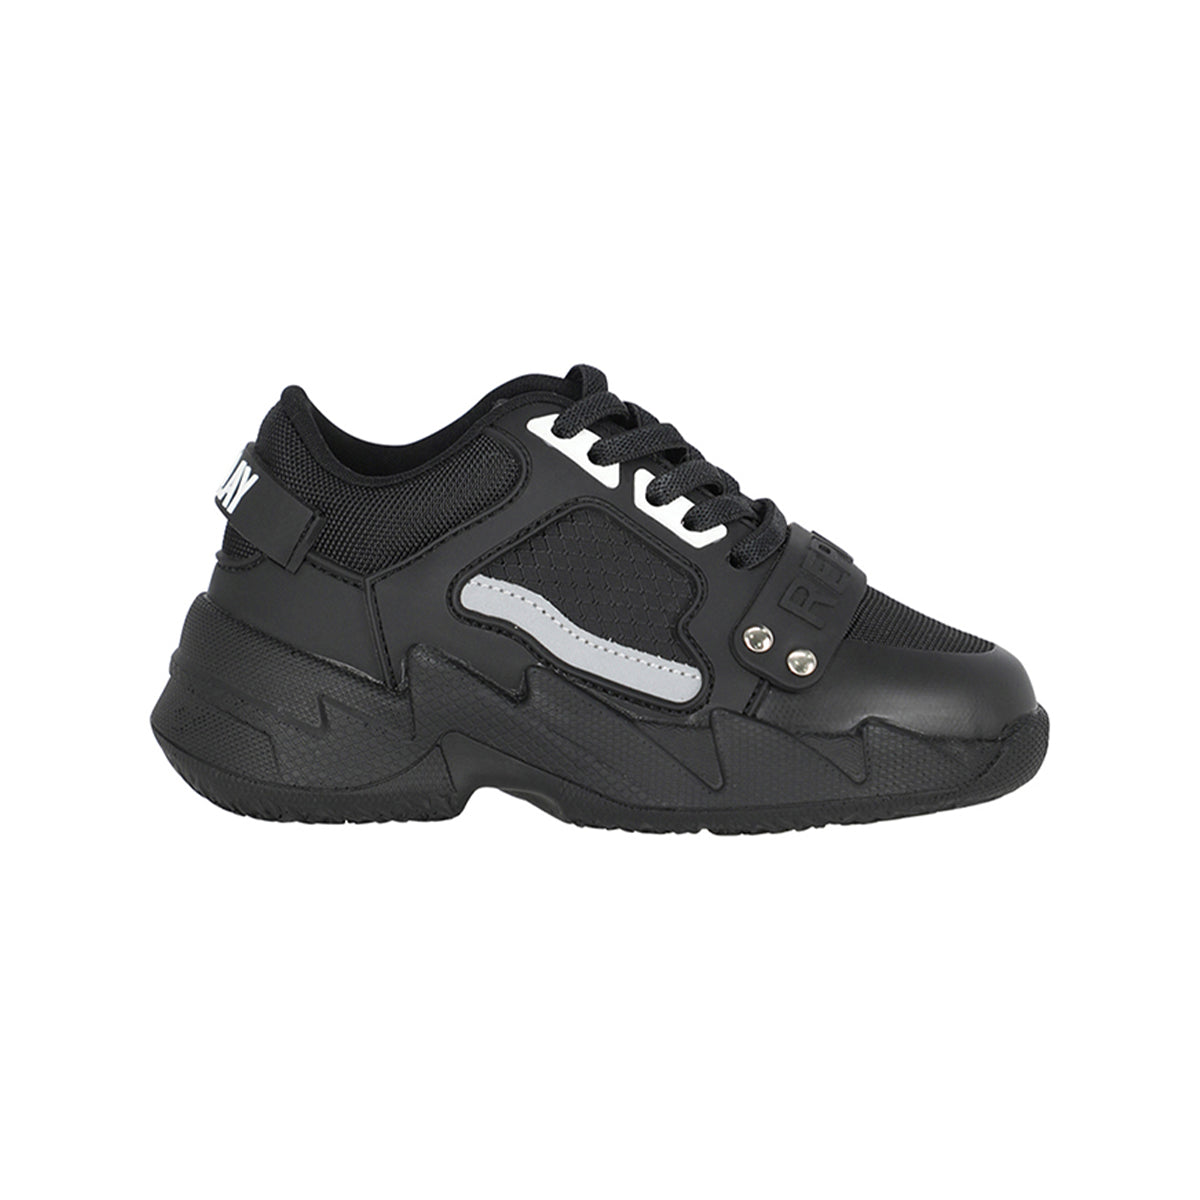 נעלי Replay סוליה גבוהה לוגו מותג באמצע צבע שחור לילדים